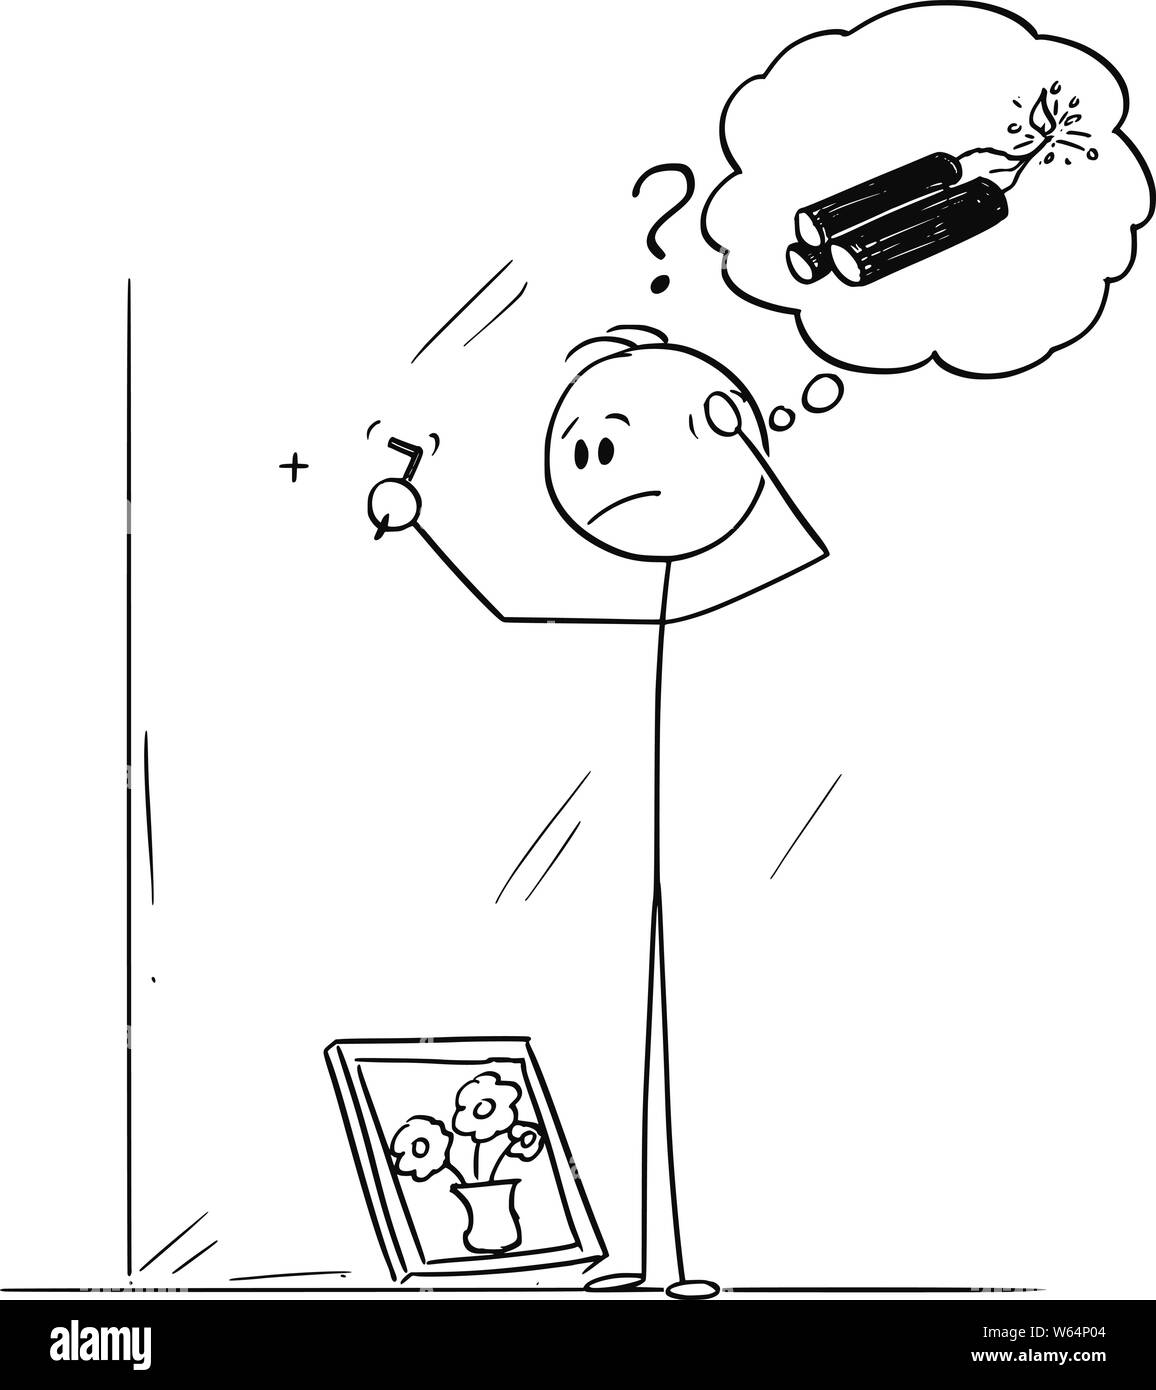 Vector cartoon stick figure dessin illustration conceptuelle de l'homme maladroit maladroit ou penser à des explosifs, en essayant de comprendre comment insérer un crochet pour tableau encadré. Illustration de Vecteur